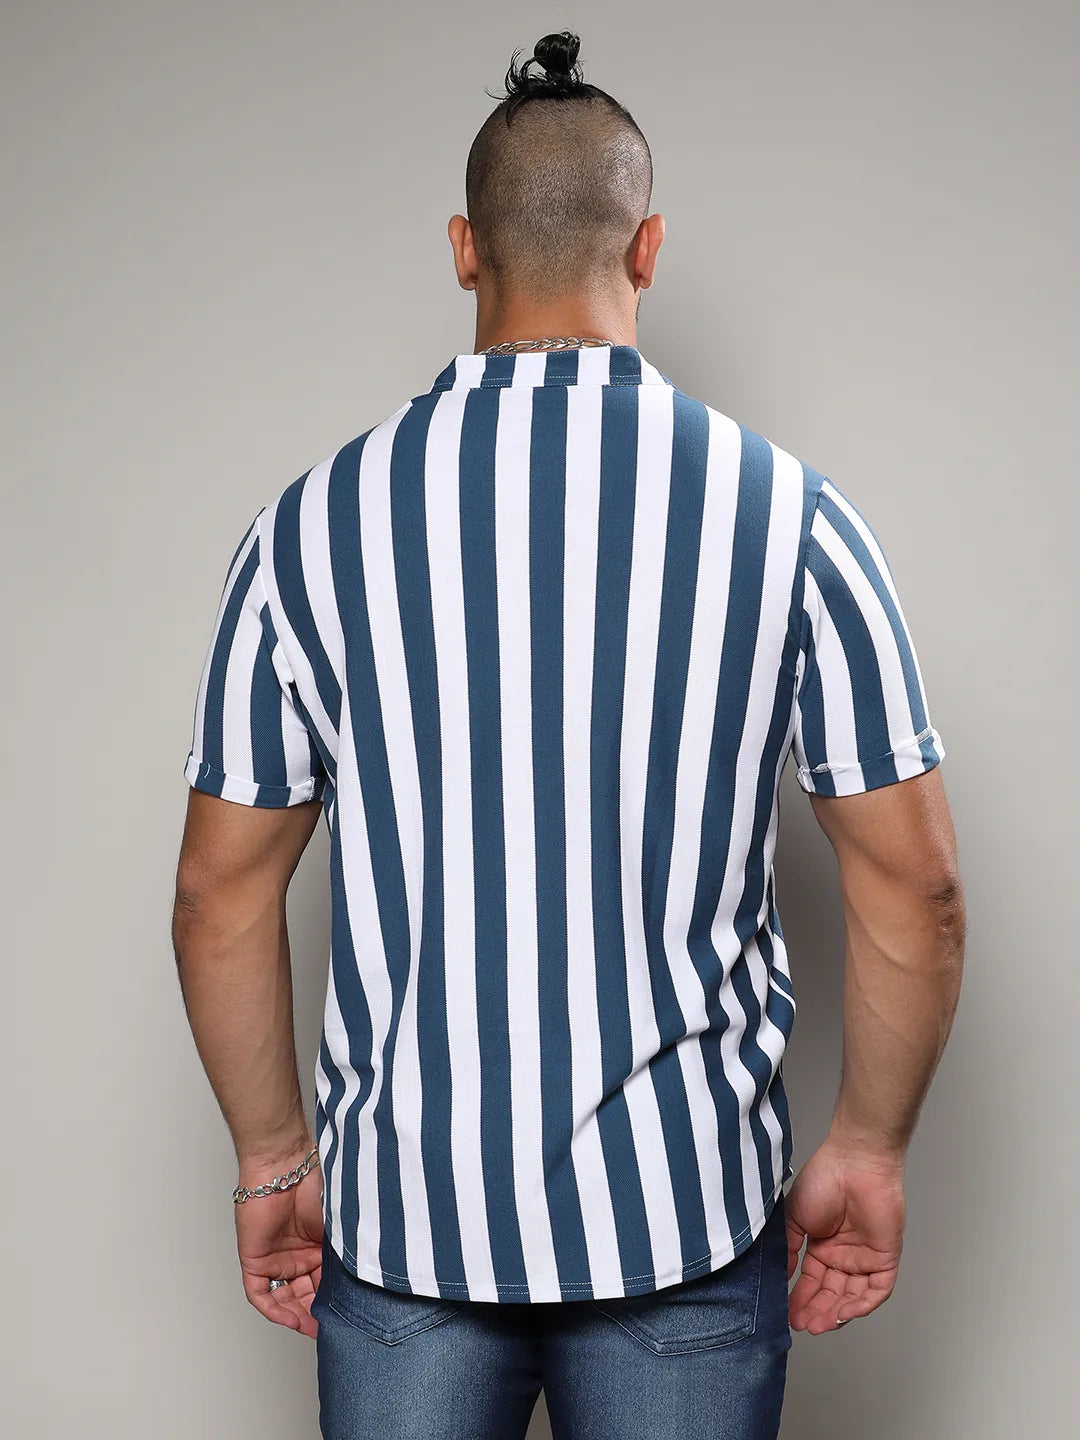 Striped Stylish Casual Shirt